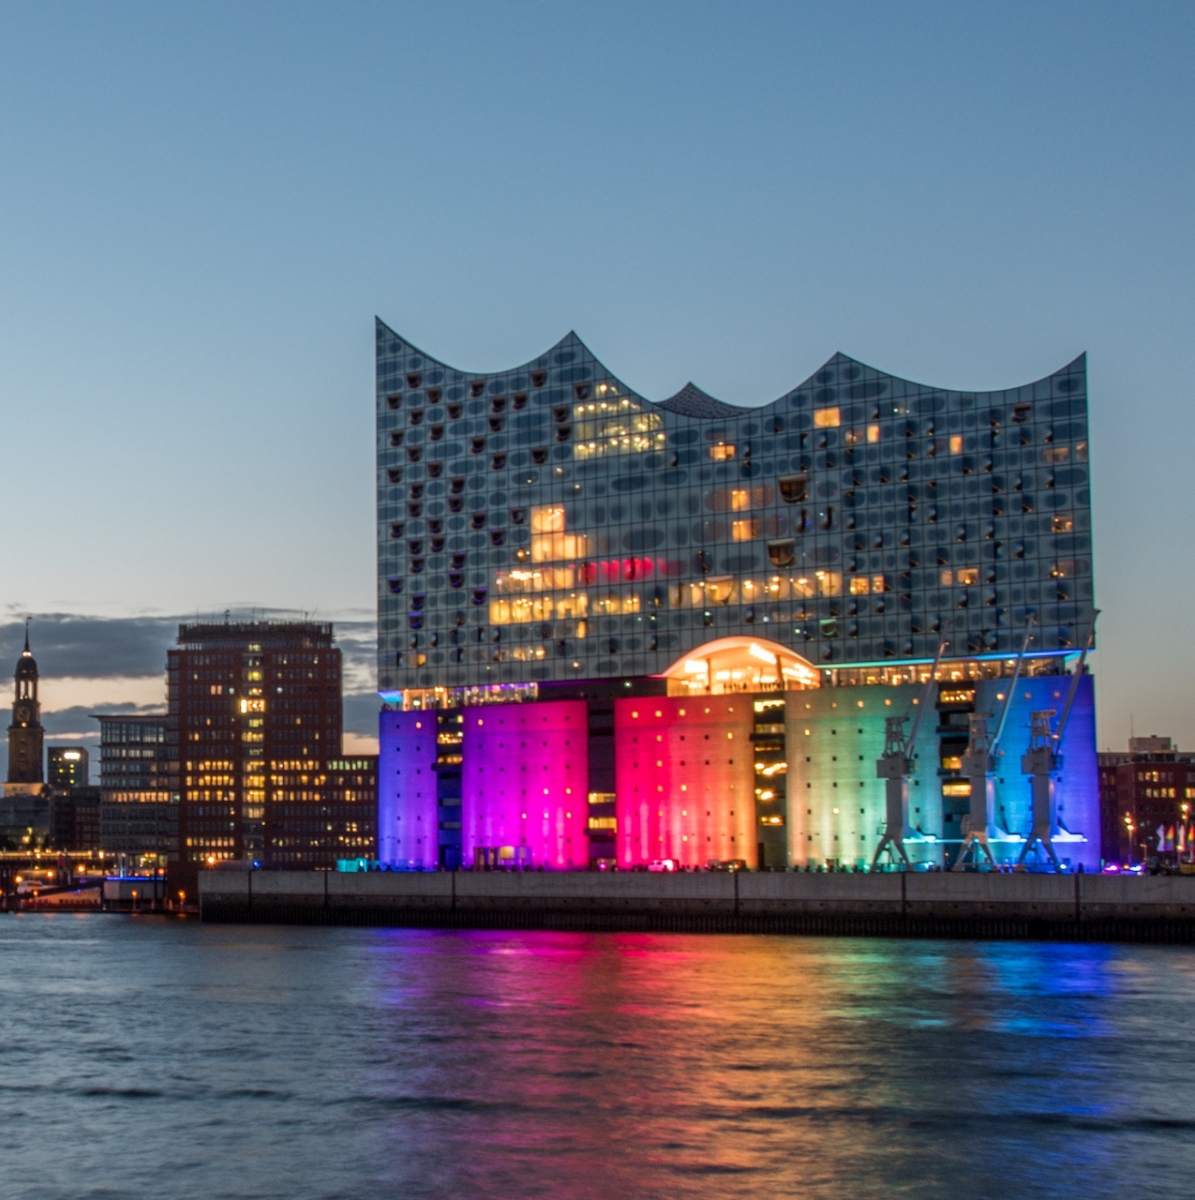 Гамбург, Германия, Панорама гавани ночью.  С цветным освещенным музыкальным залом в День Кристофера Стрит.